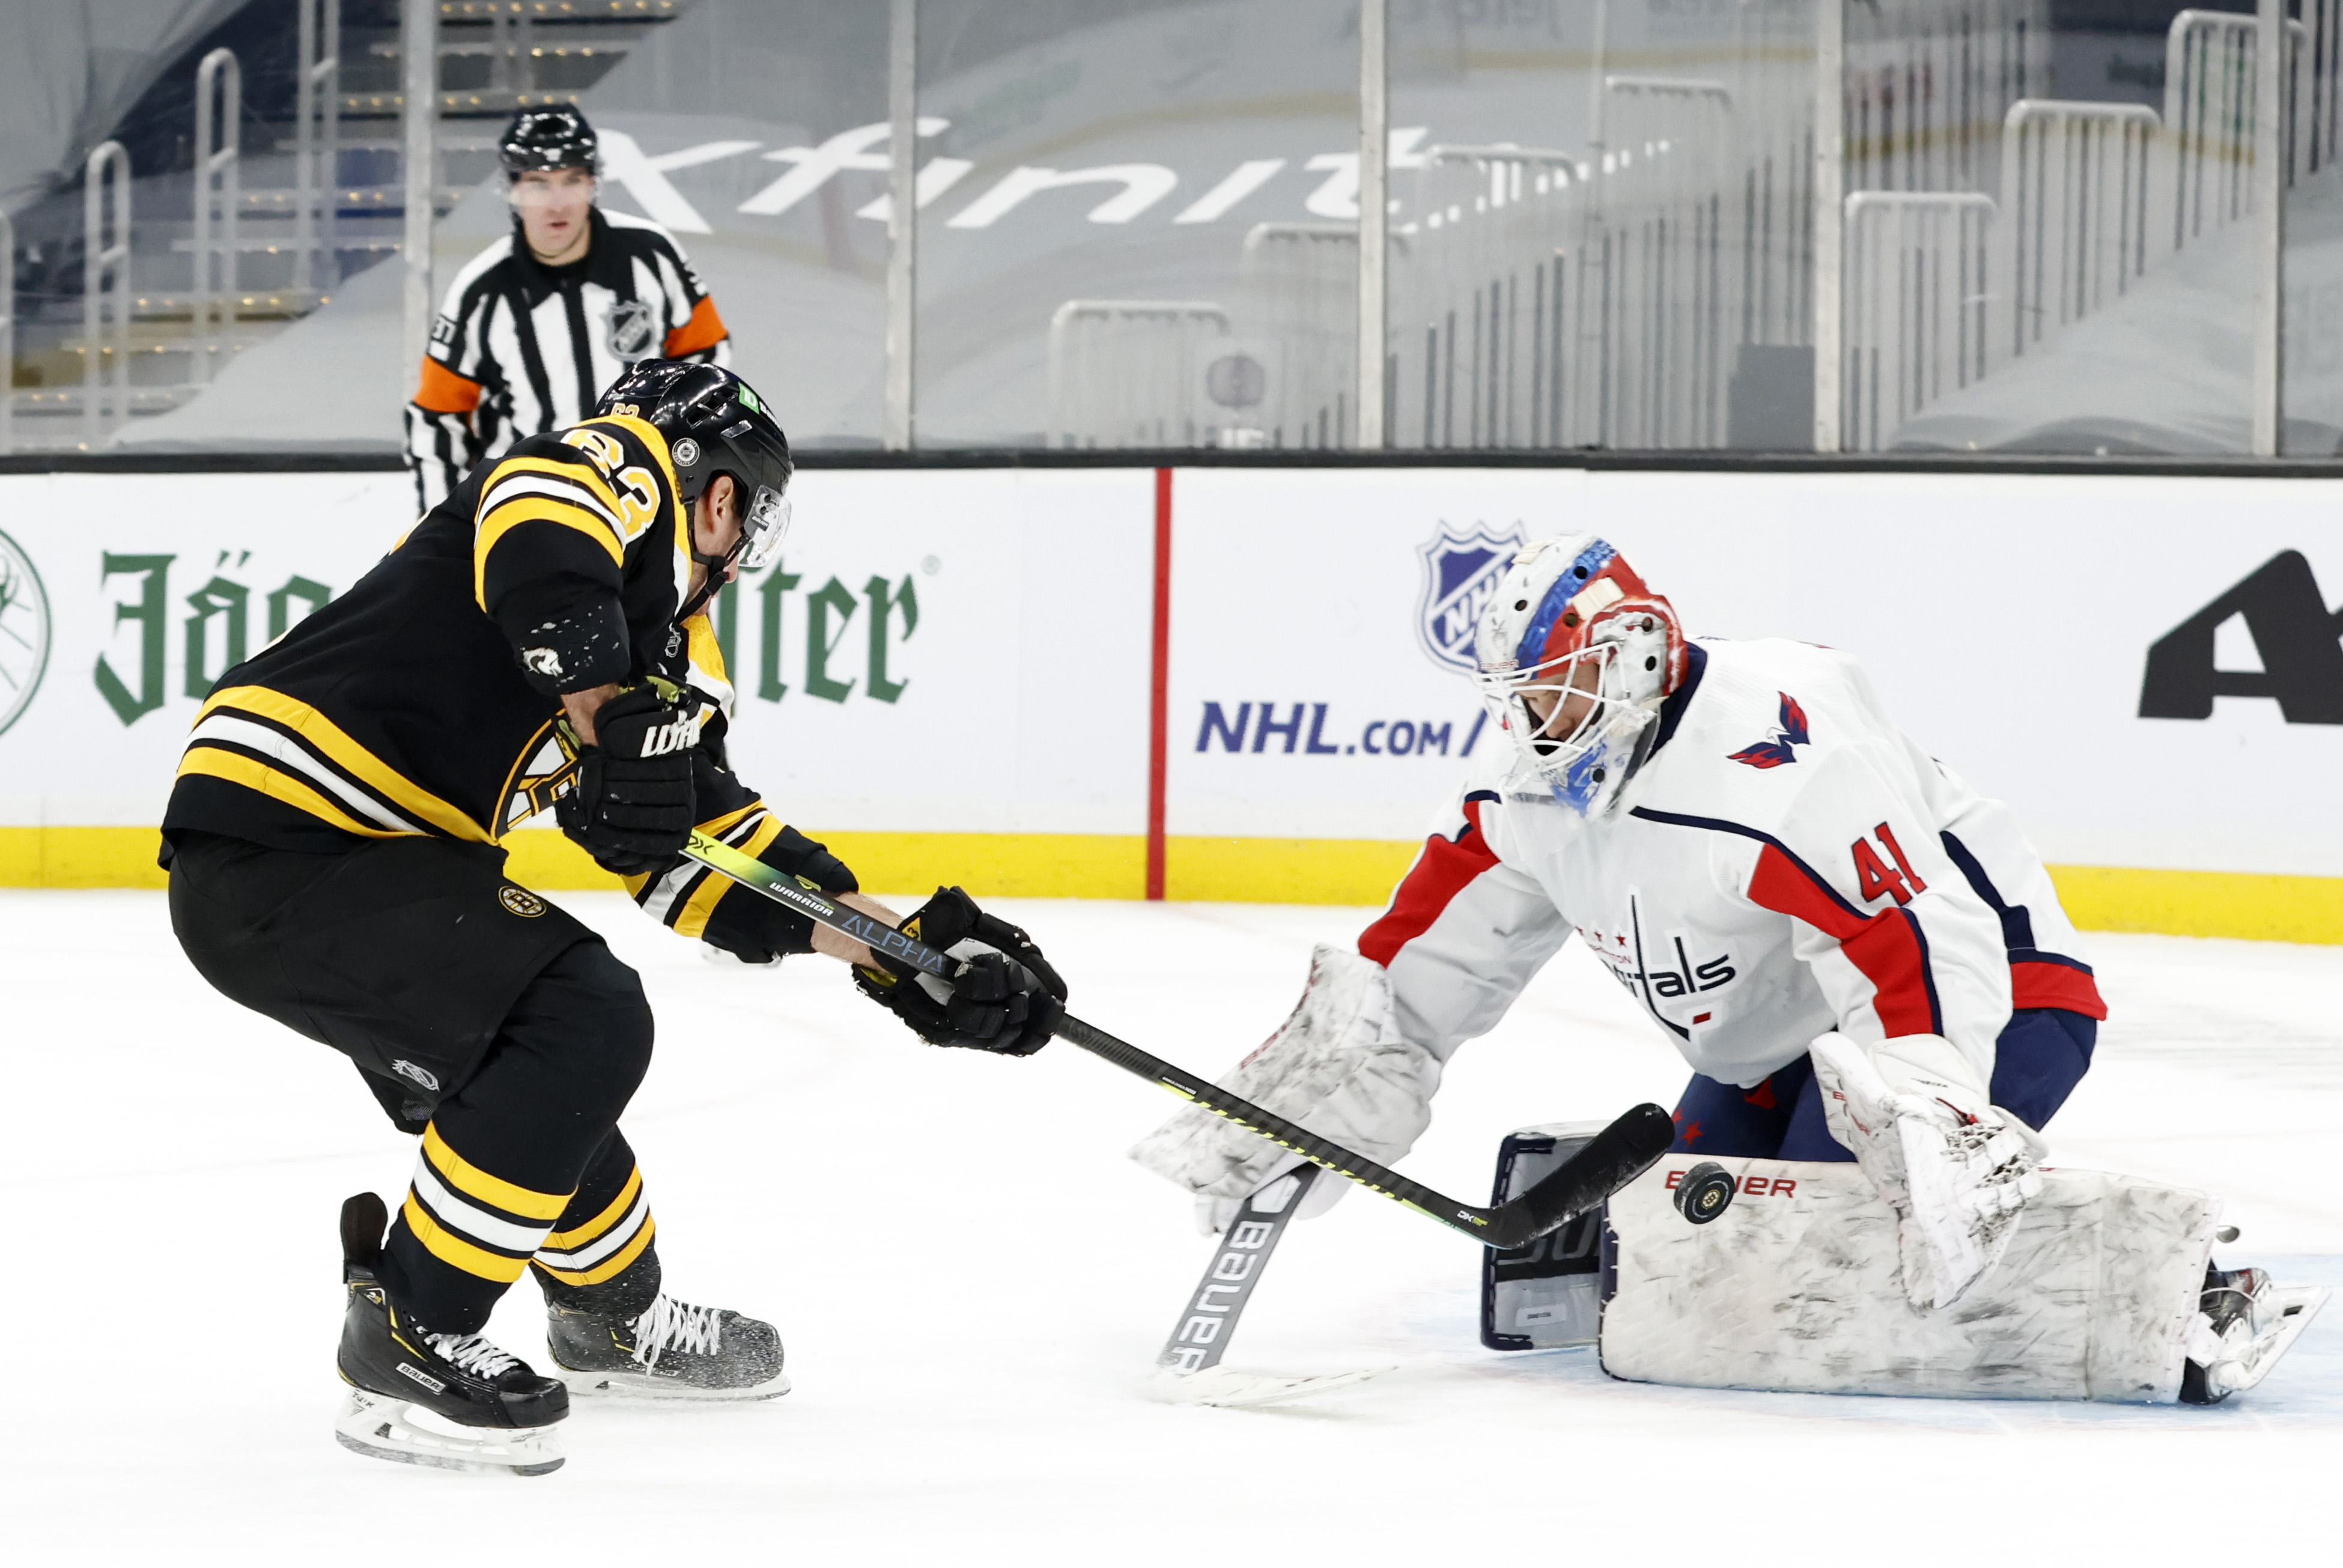 NHL: MAR 03 Capitals at Bruins